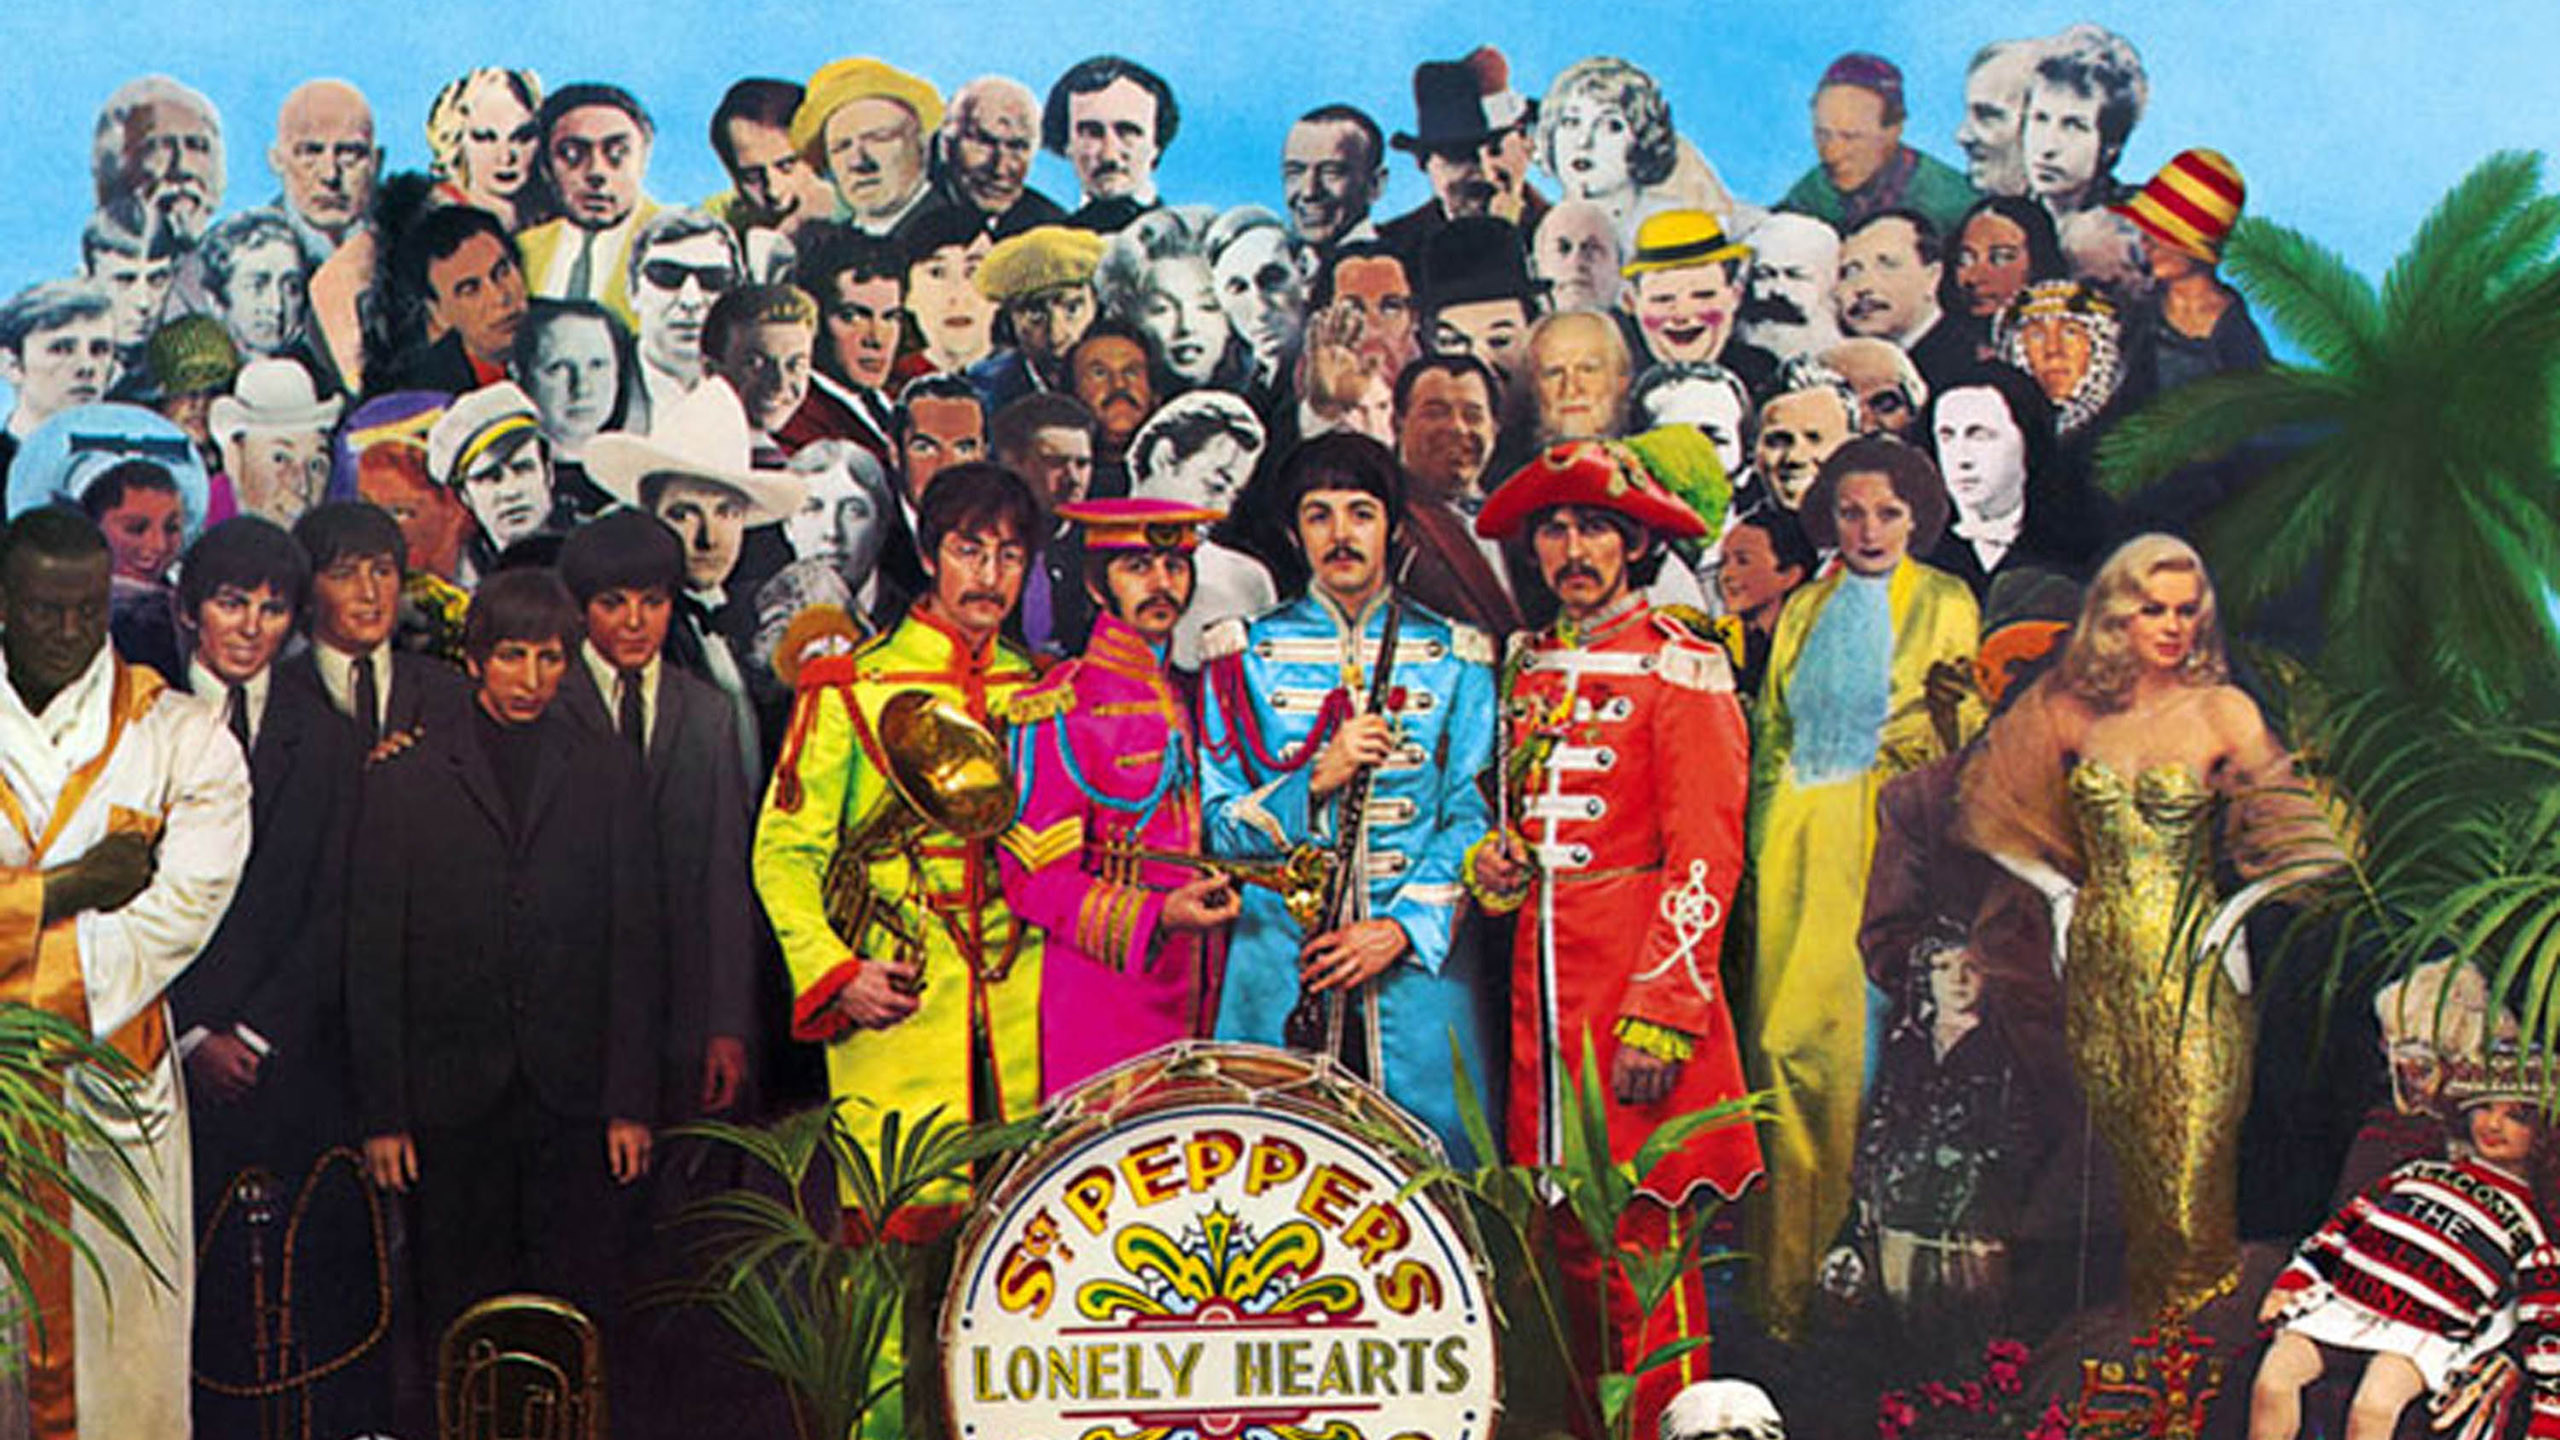 Beatles Sgt Pepper , HD Wallpaper & Backgrounds